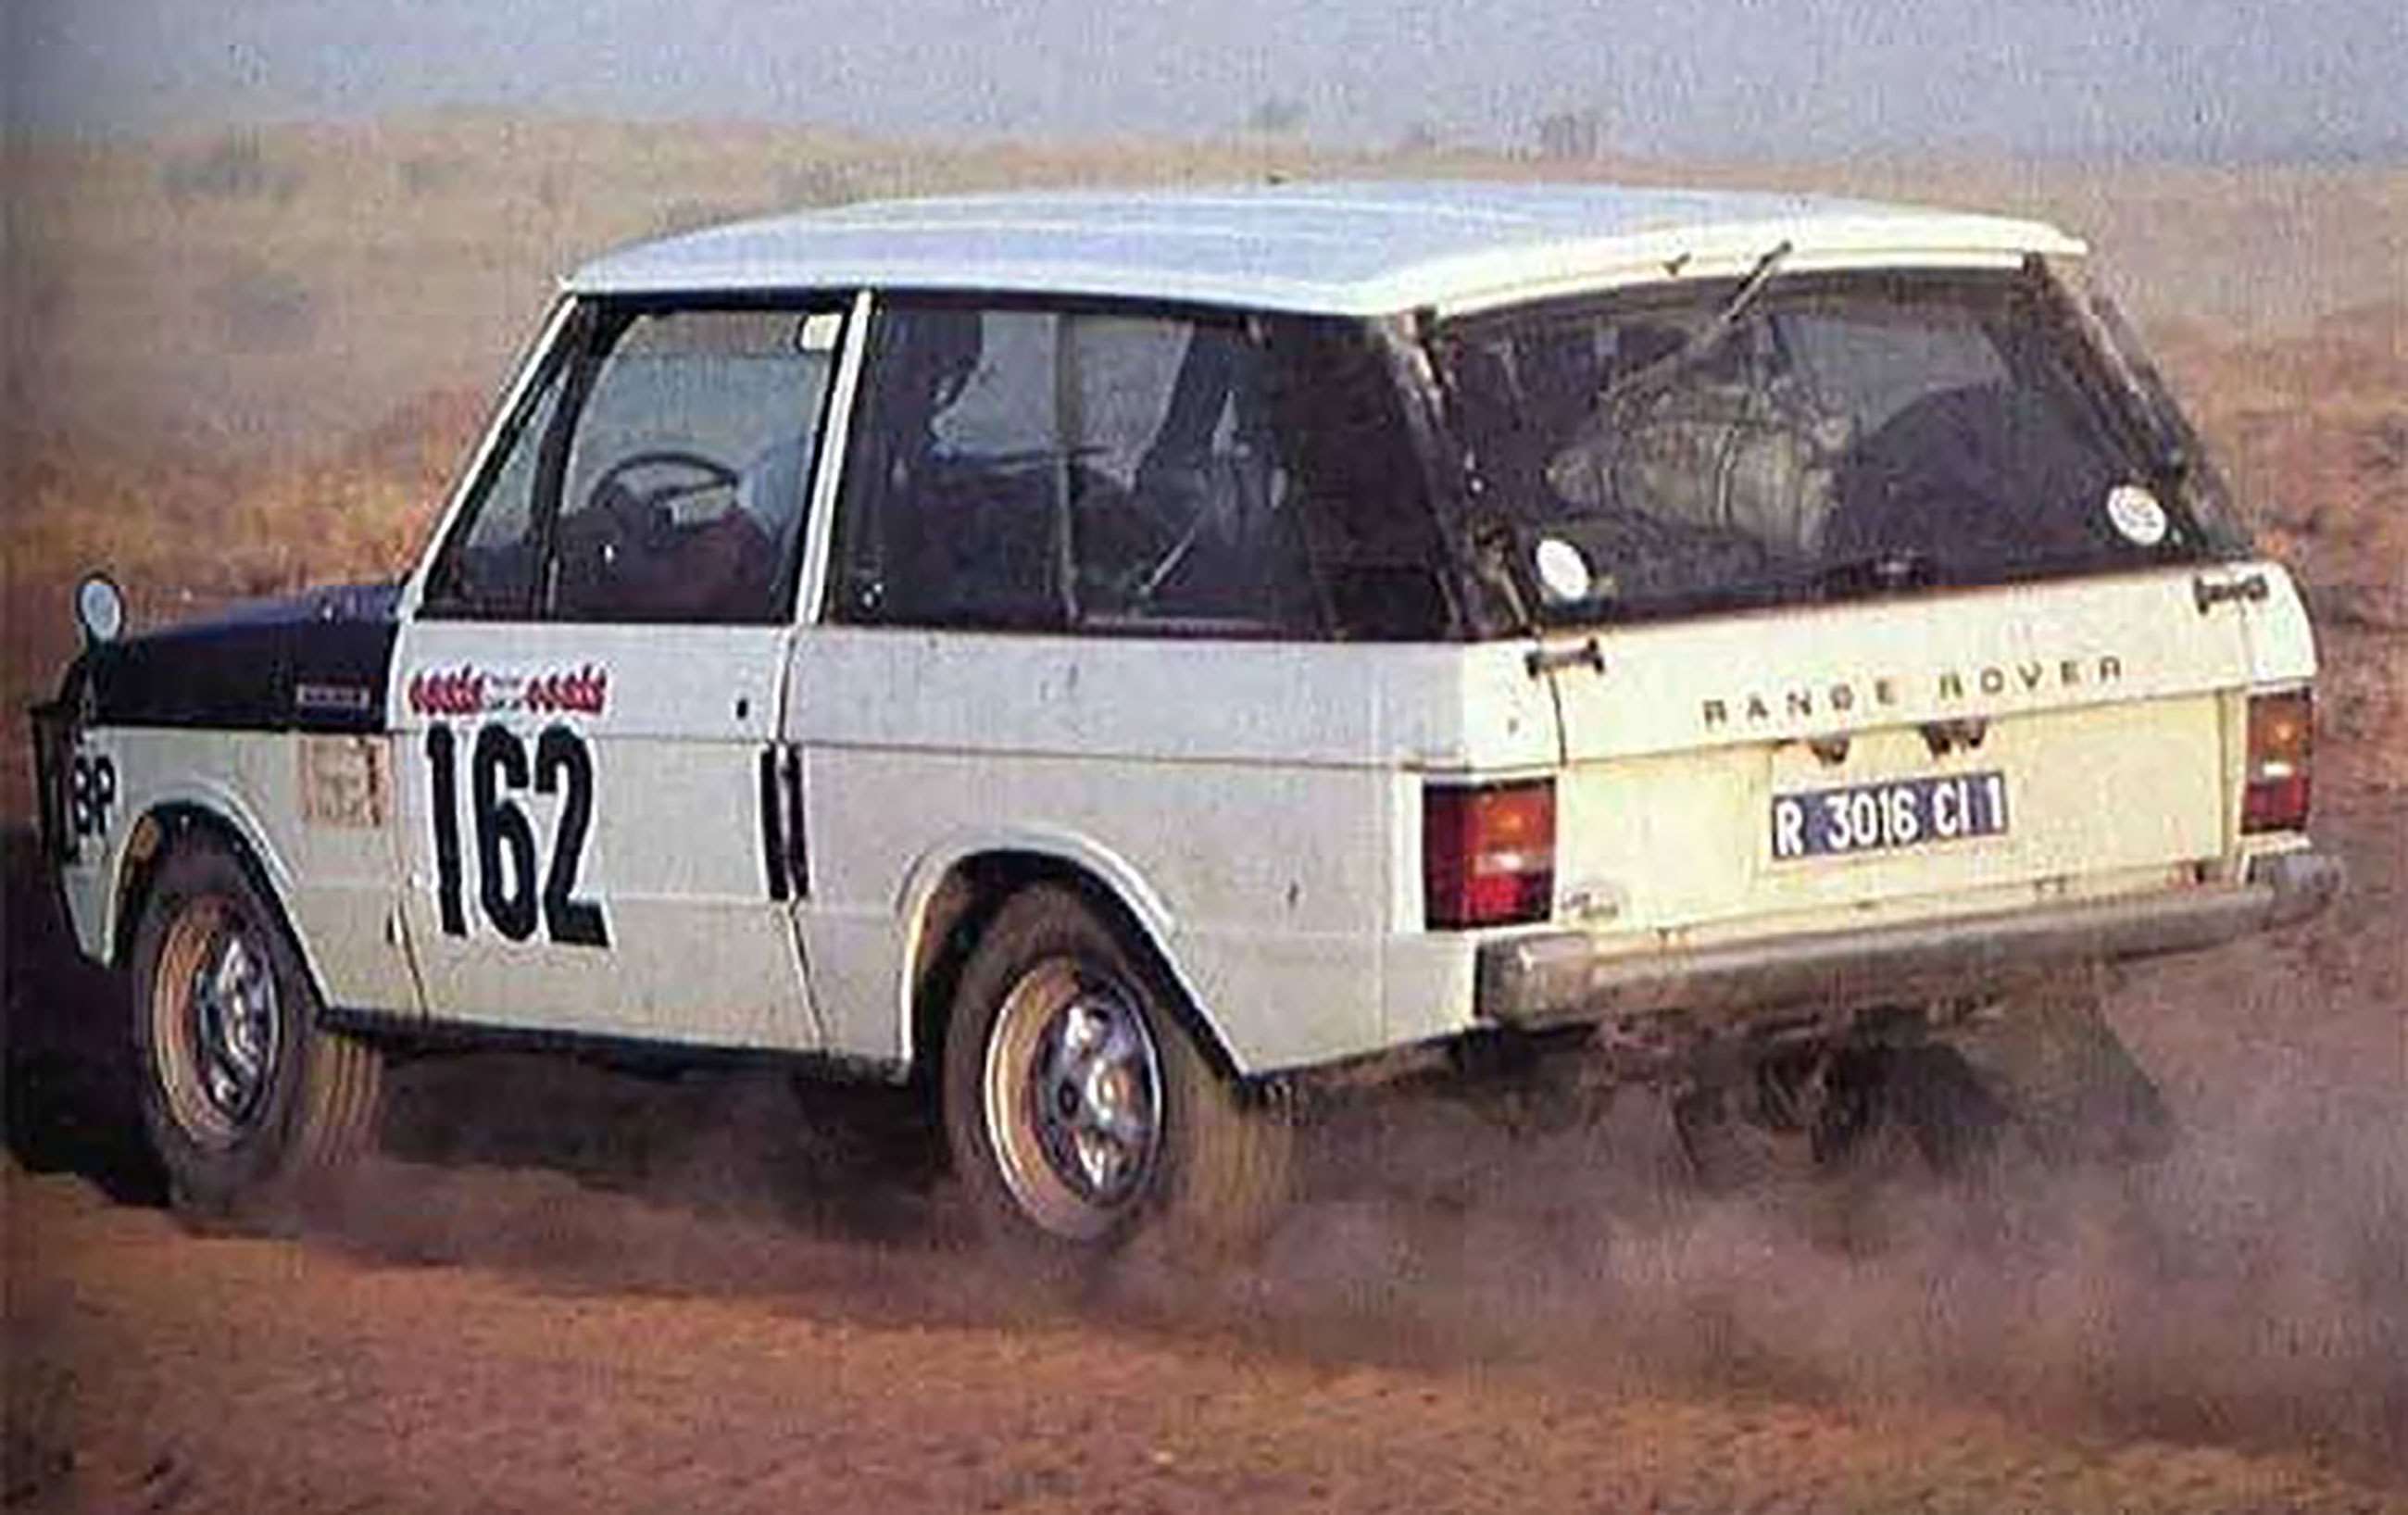 coolest-cars-of-dakar-range-rover-1979-goodwood-17012020.jpg